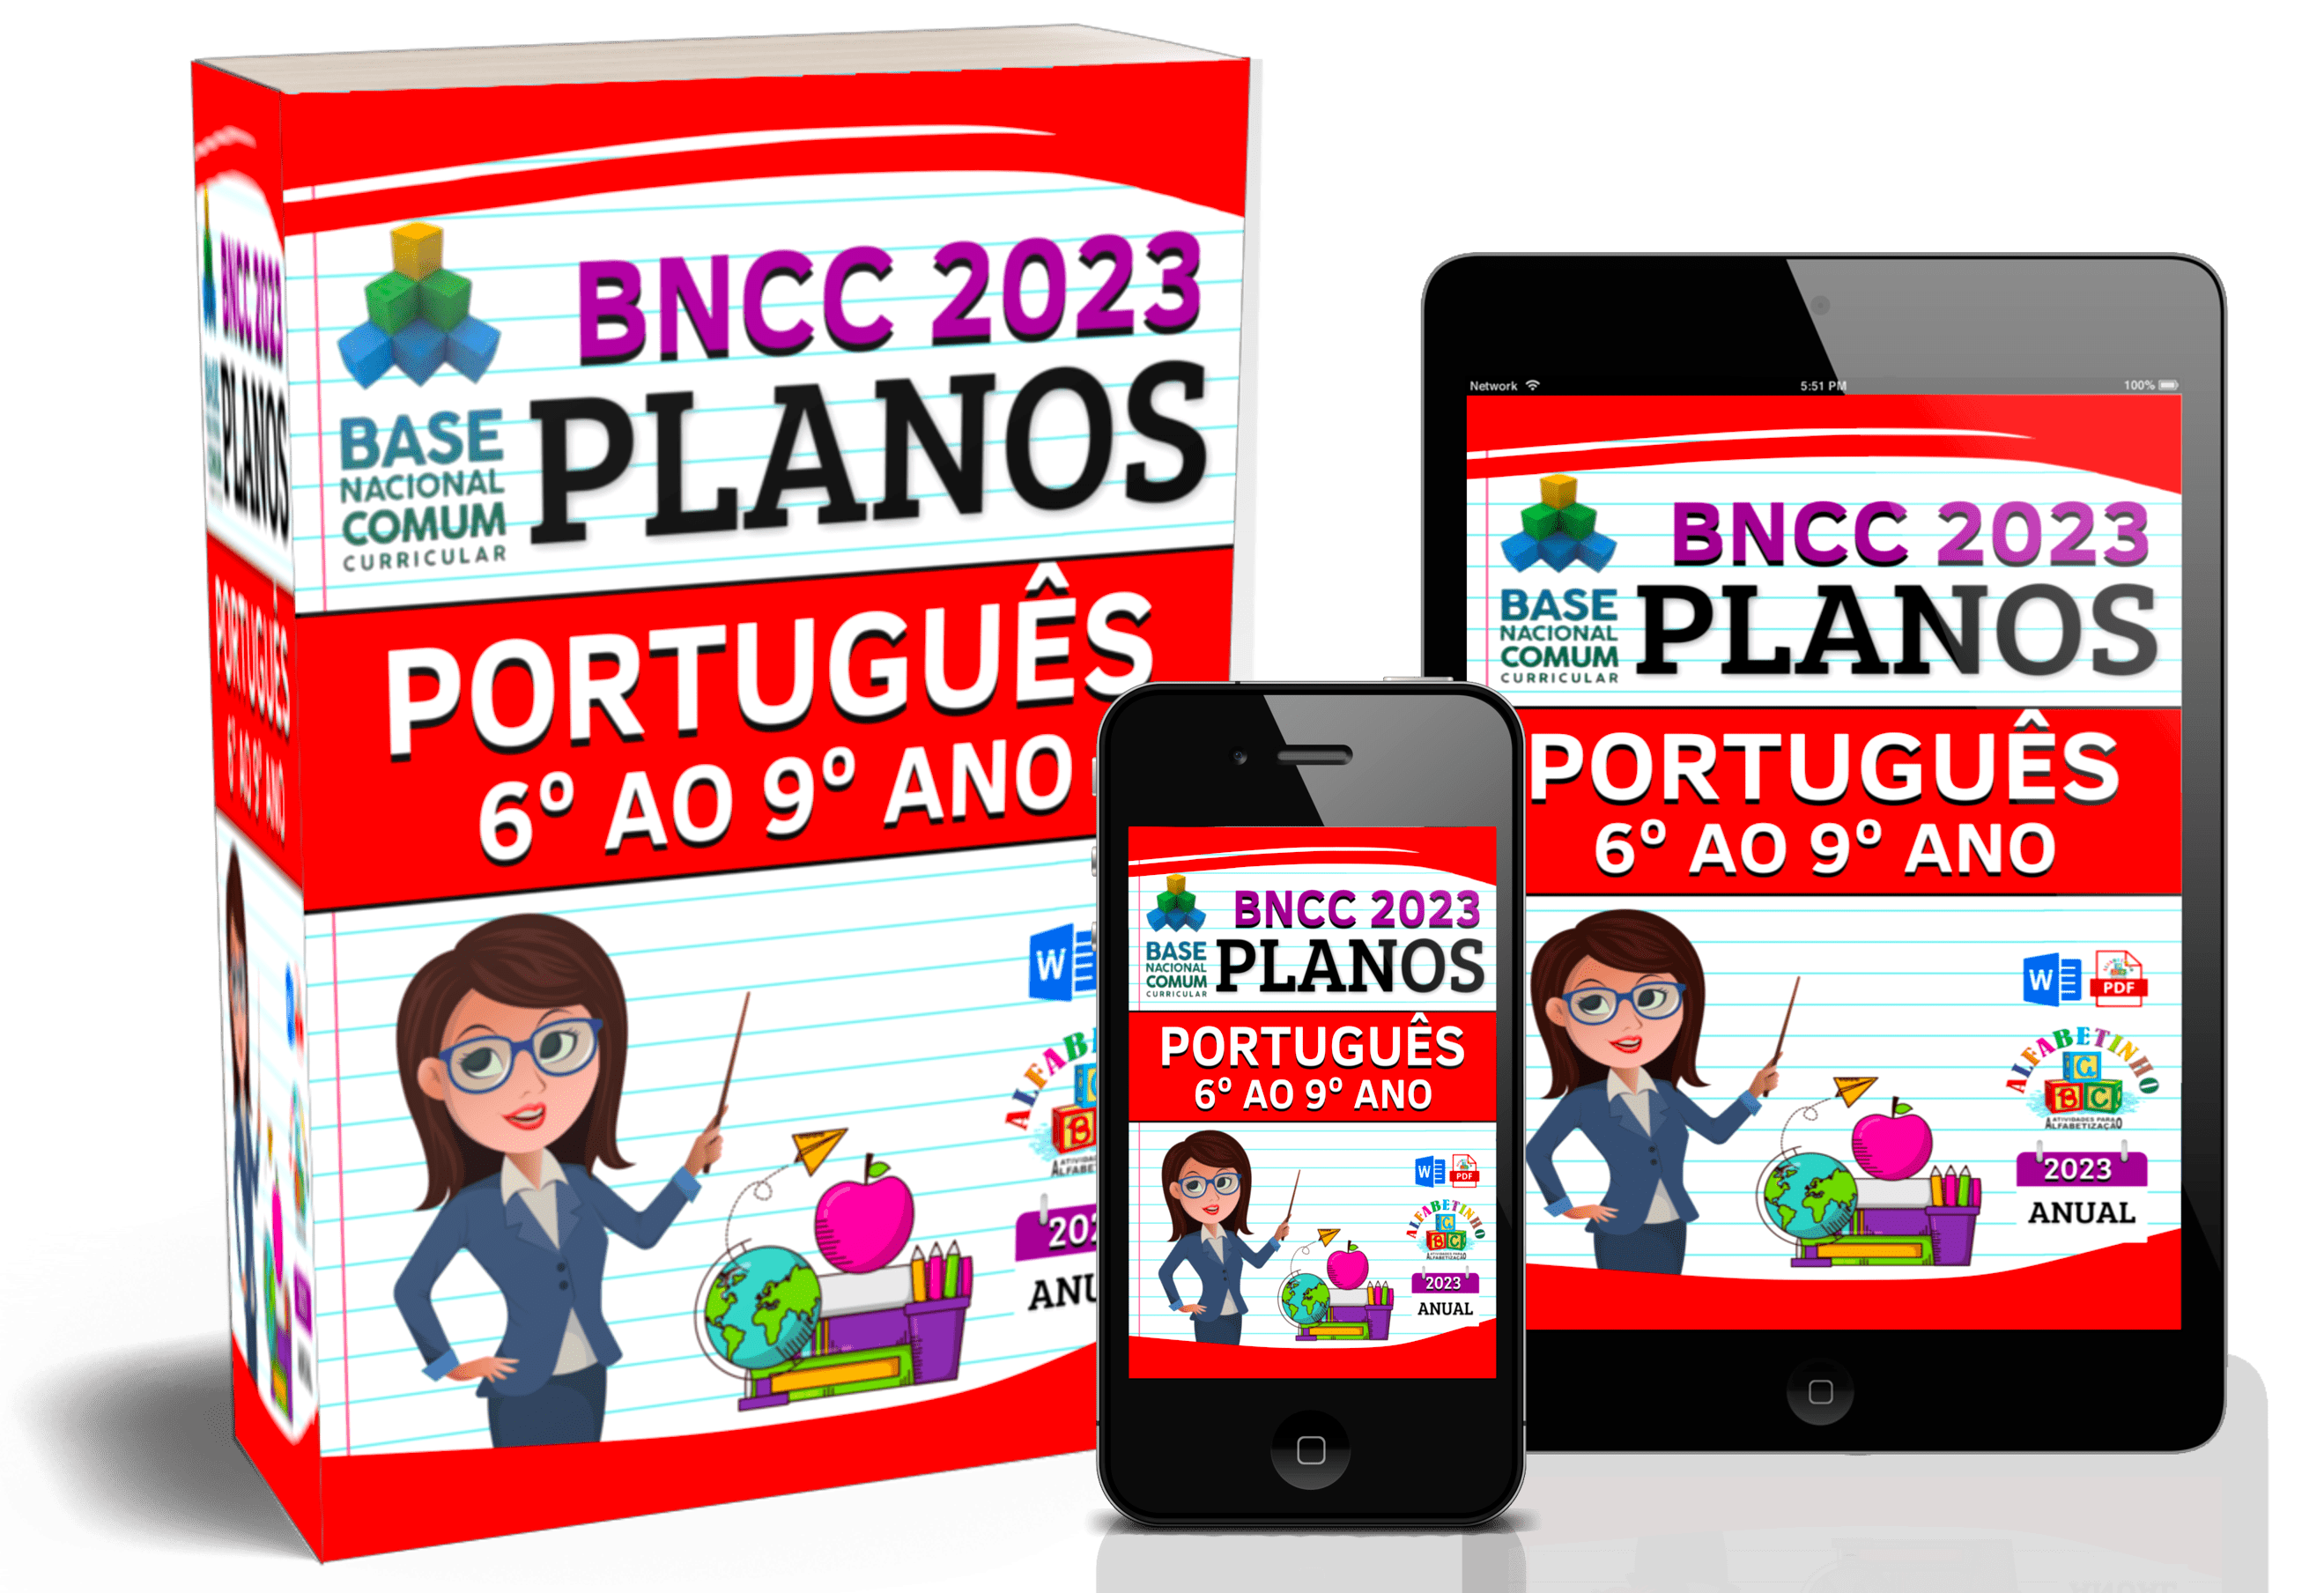 PLANEJAMENTOS:
LÍNGUA PORTUGUESA
(6° AO 9° ANO)
1 Planejamentos anuais de aulas de Português do 6° ao 9° ano 2023
2 Atualizado e de acordo com a BNCC 2023
3 Área e objetivo de conhecimento
4 Habilidades
5 Desenvolvimento
6 Avaliações
7 Atividades